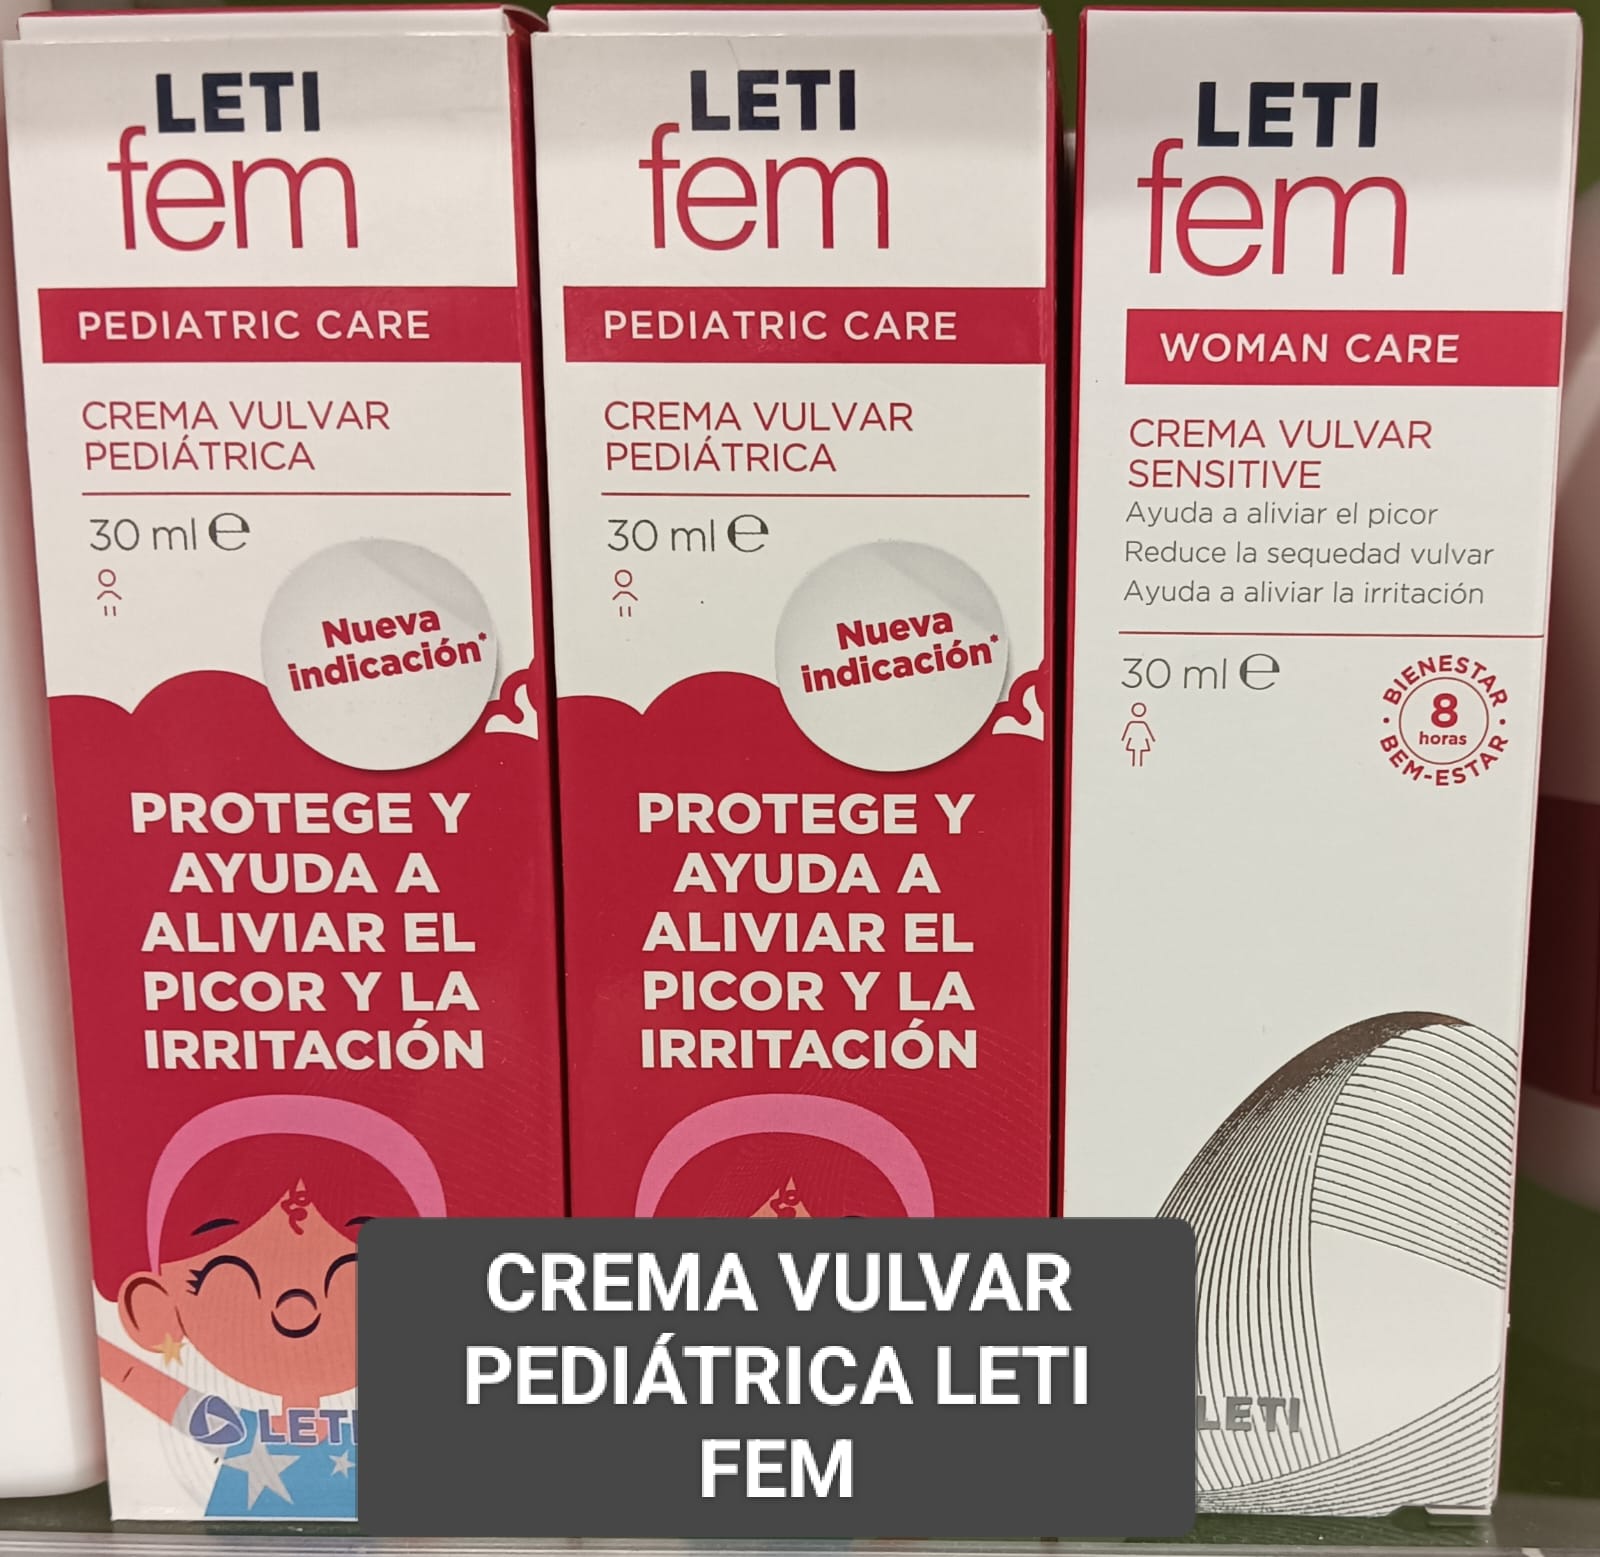 La crema vulvar pediátrica Leti Fem, es una opción valorada por muchas Mamas, debido a su formulación específica para la delicada piel de la zona vulvar y perineal en niñas.